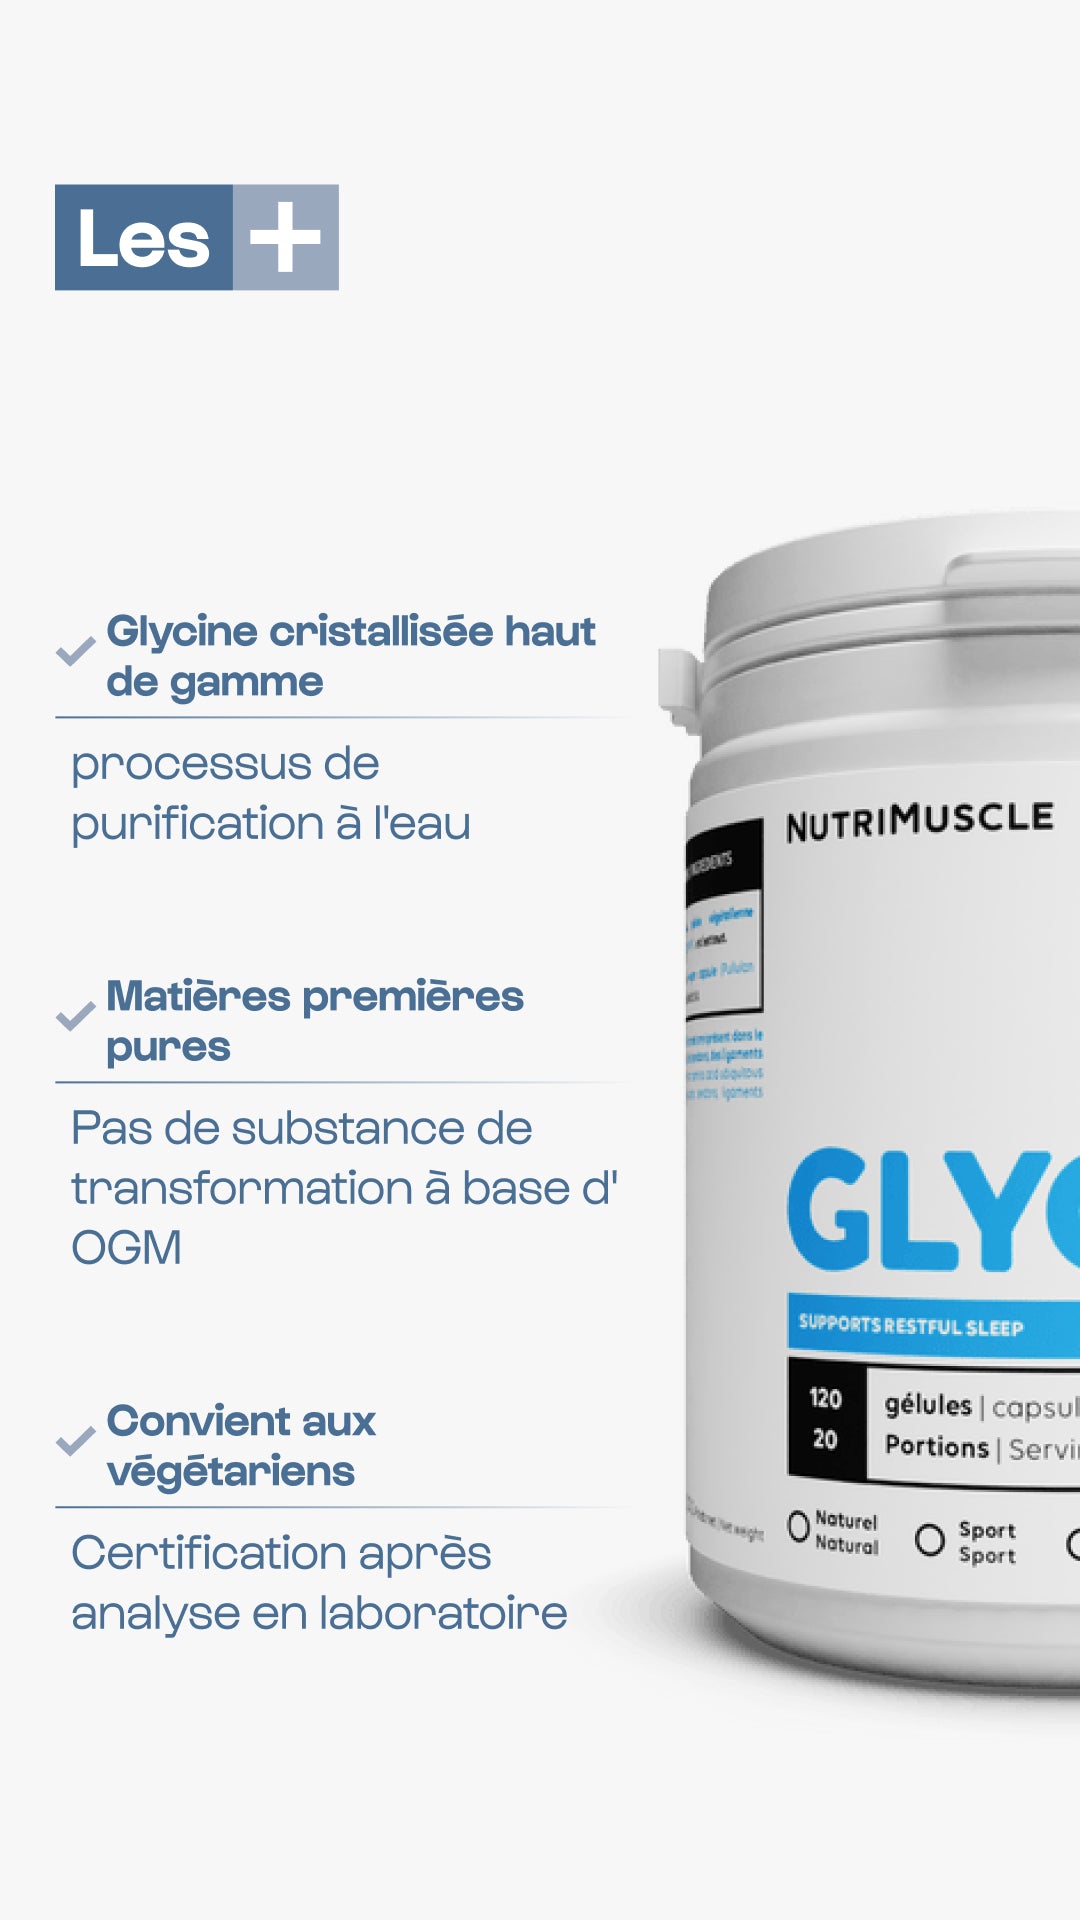 Pulverkristallisierter Glycin